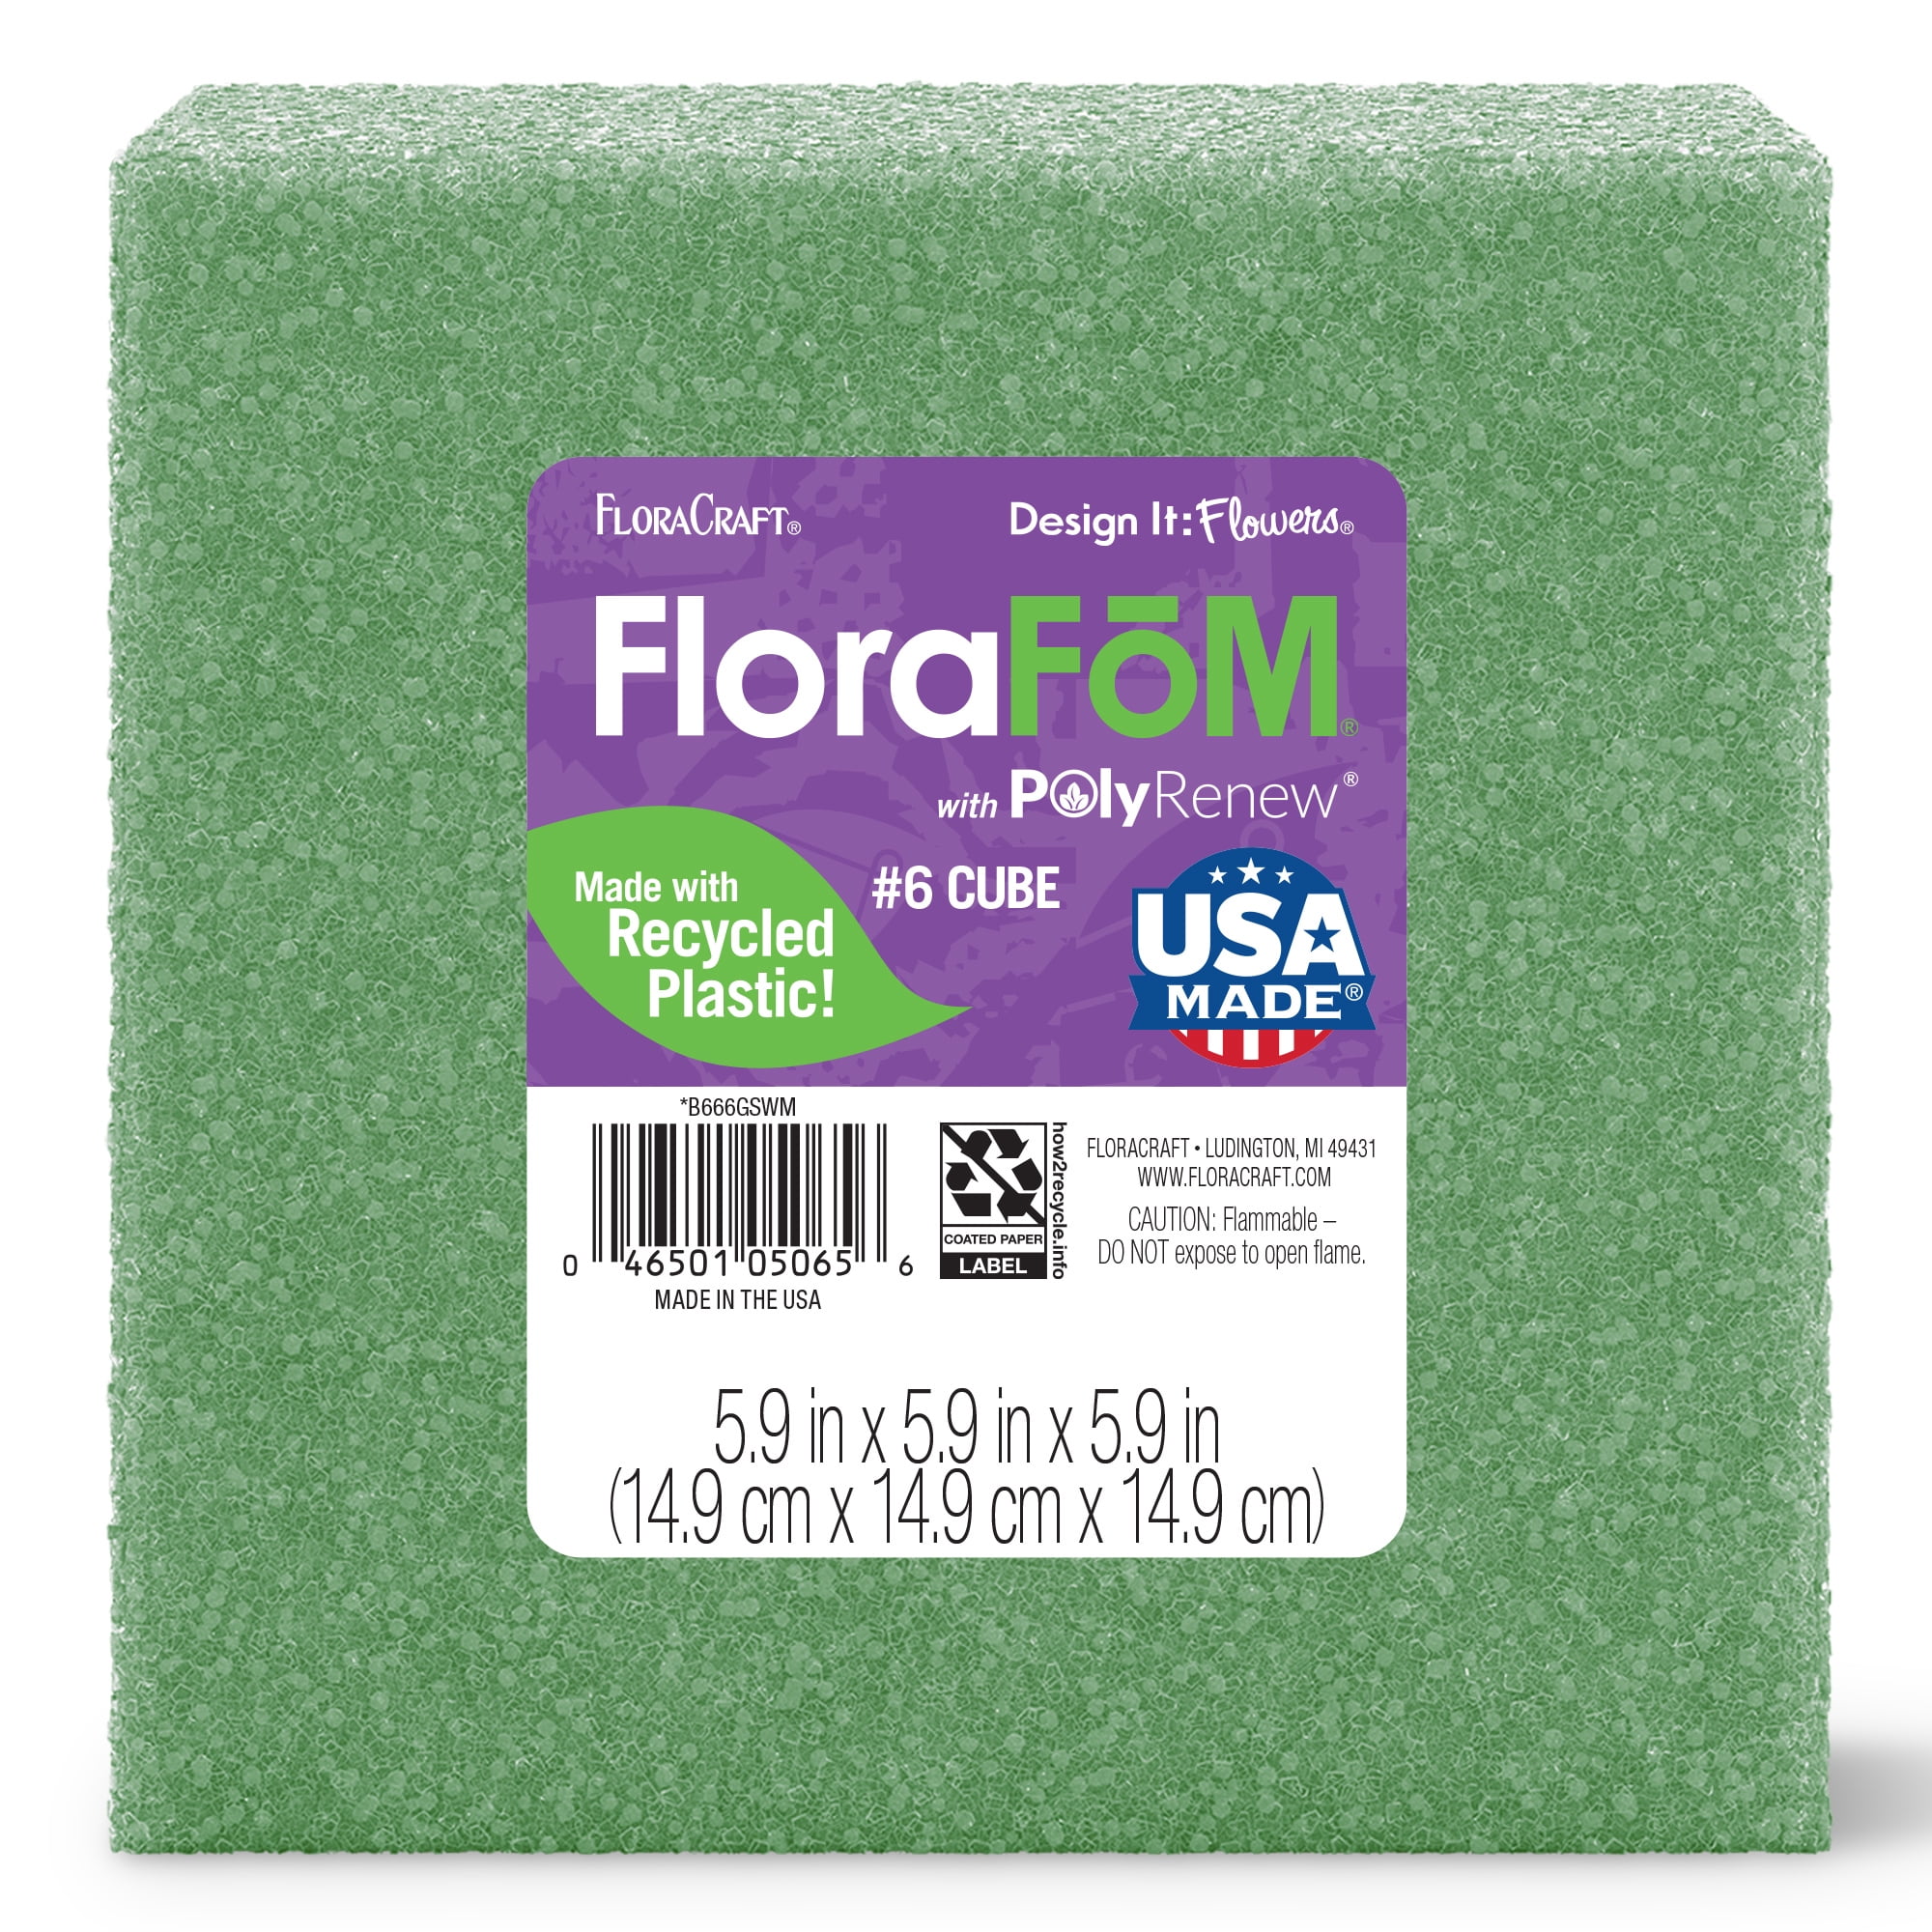 FloraCraft FloraFM Foam Cube 5.9 inch x 5.9 inch 5.9 inch Green